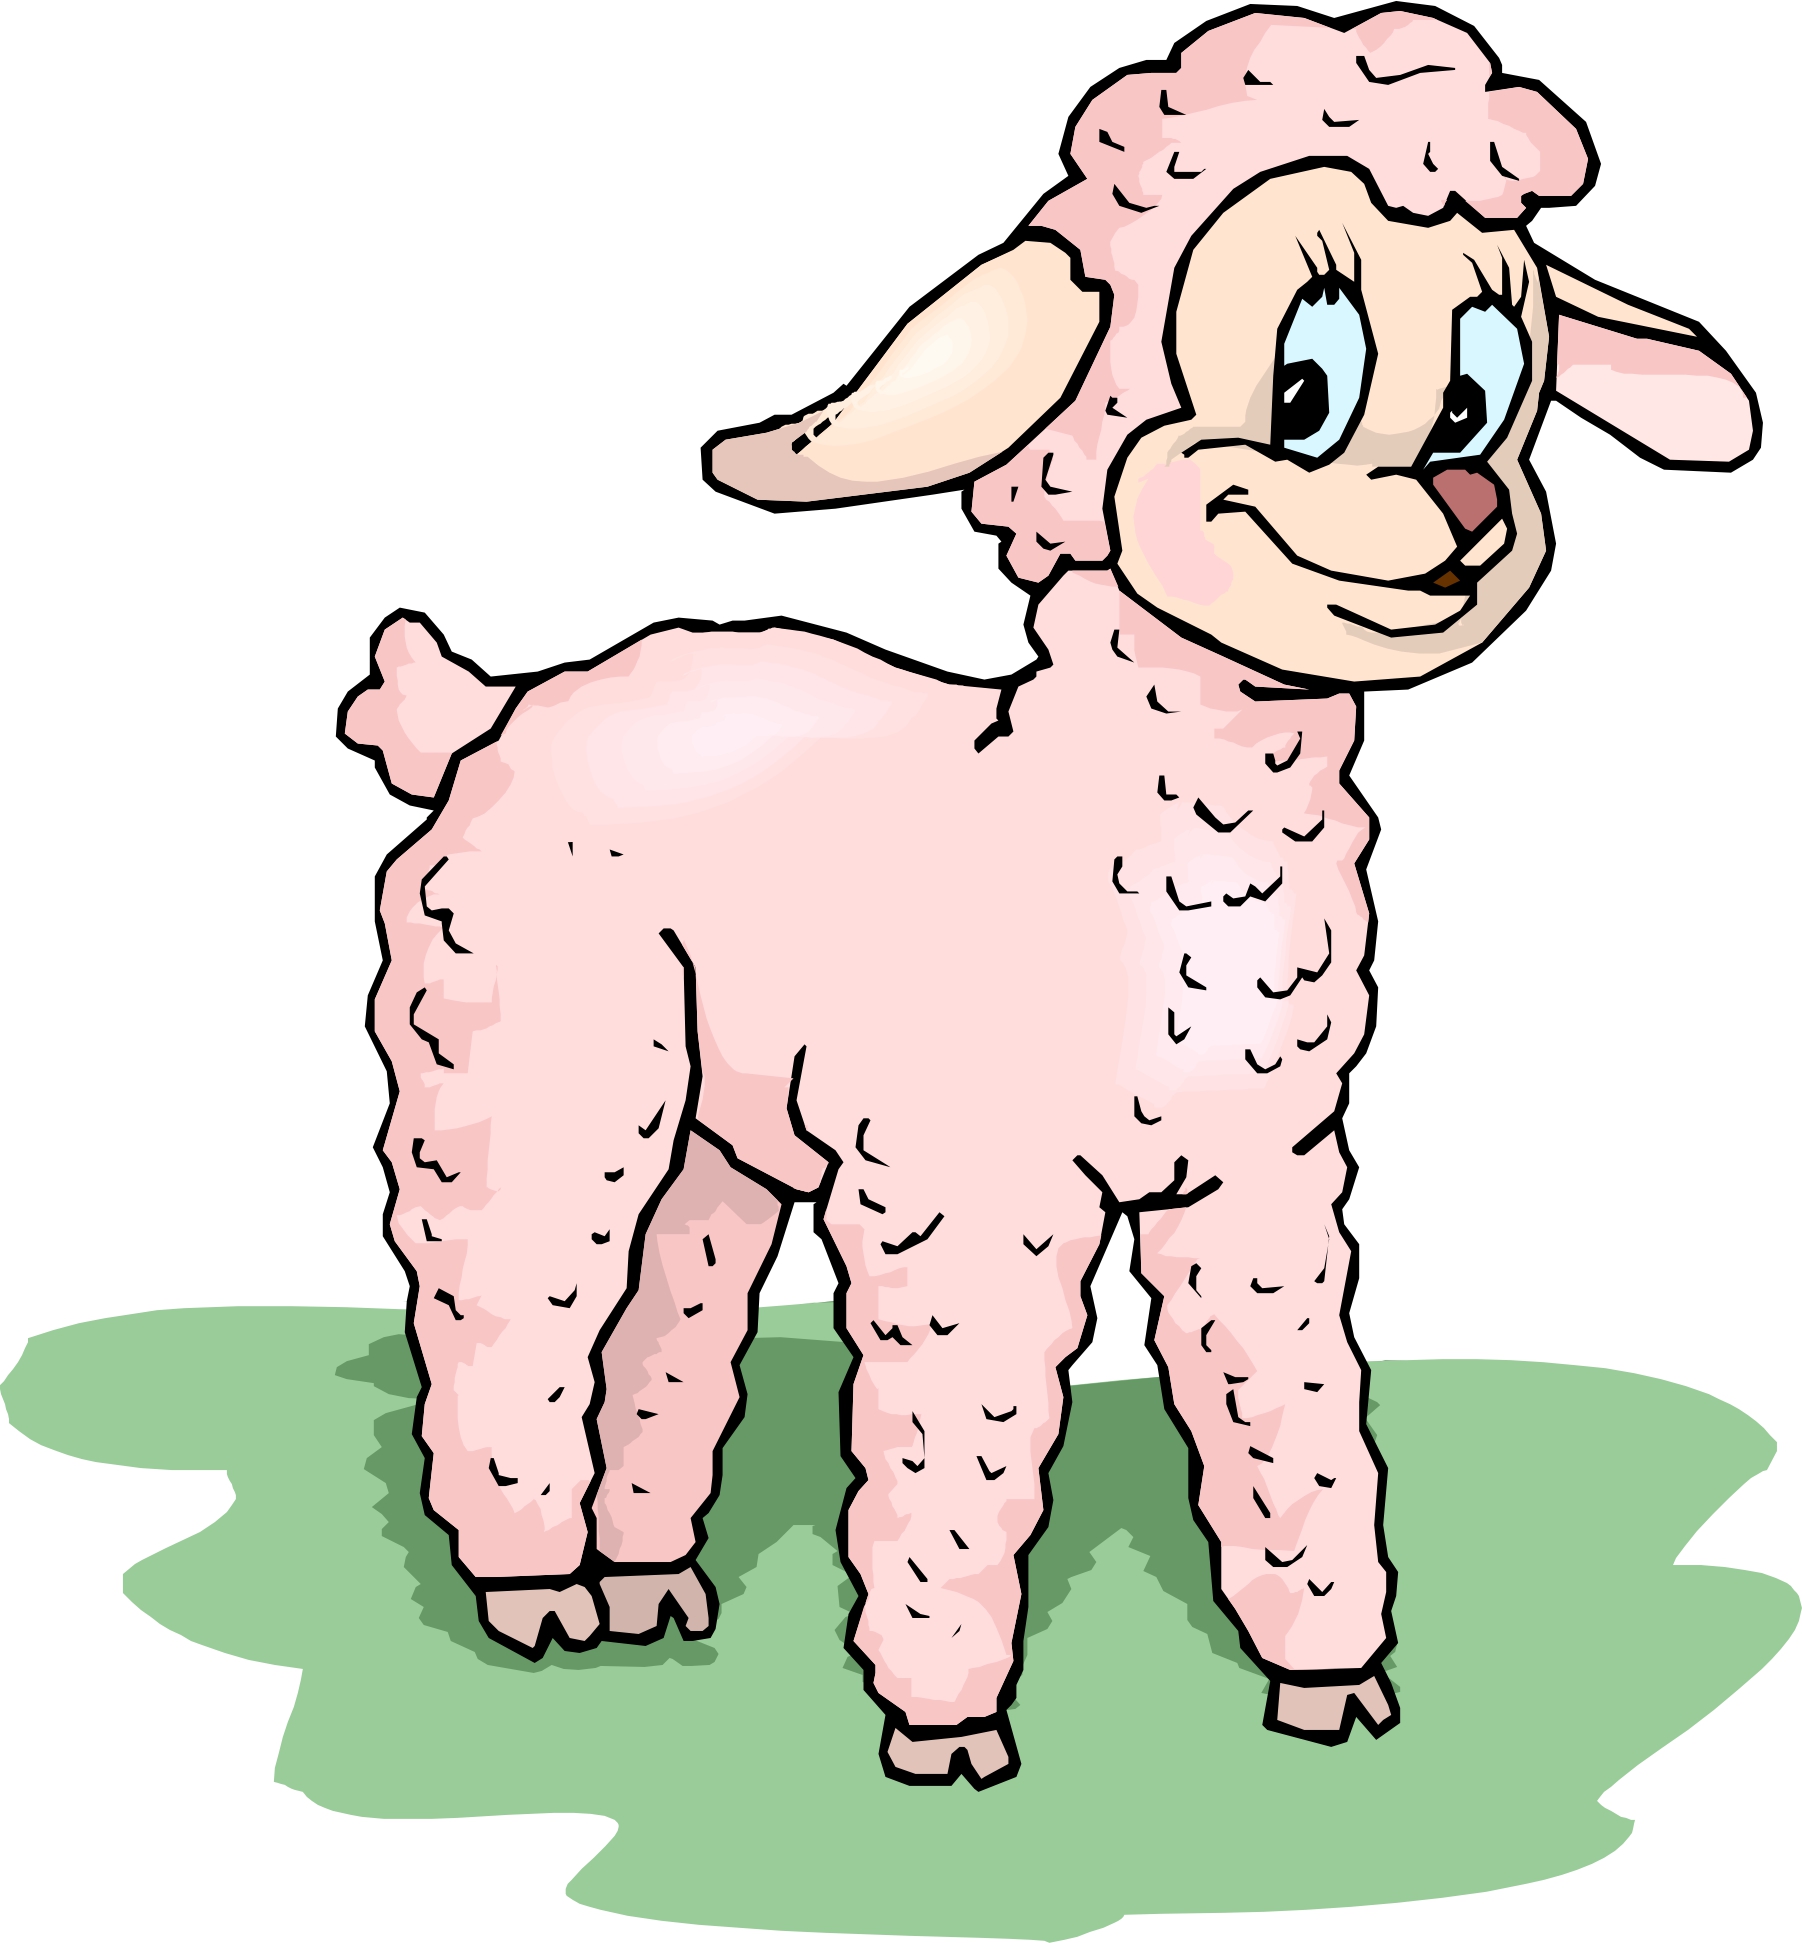 Lamb Cartoon Image